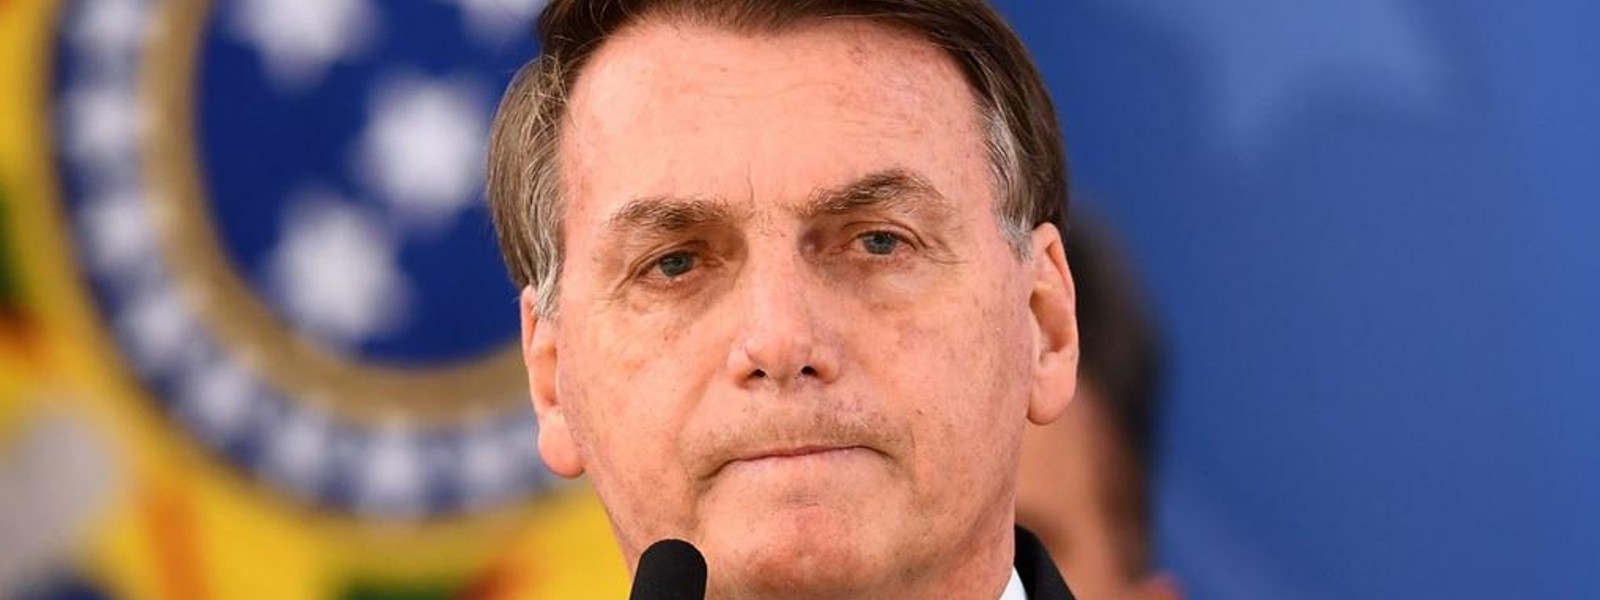 Brazil’s Bolsonaro should face COVID charges: Senate inquiry